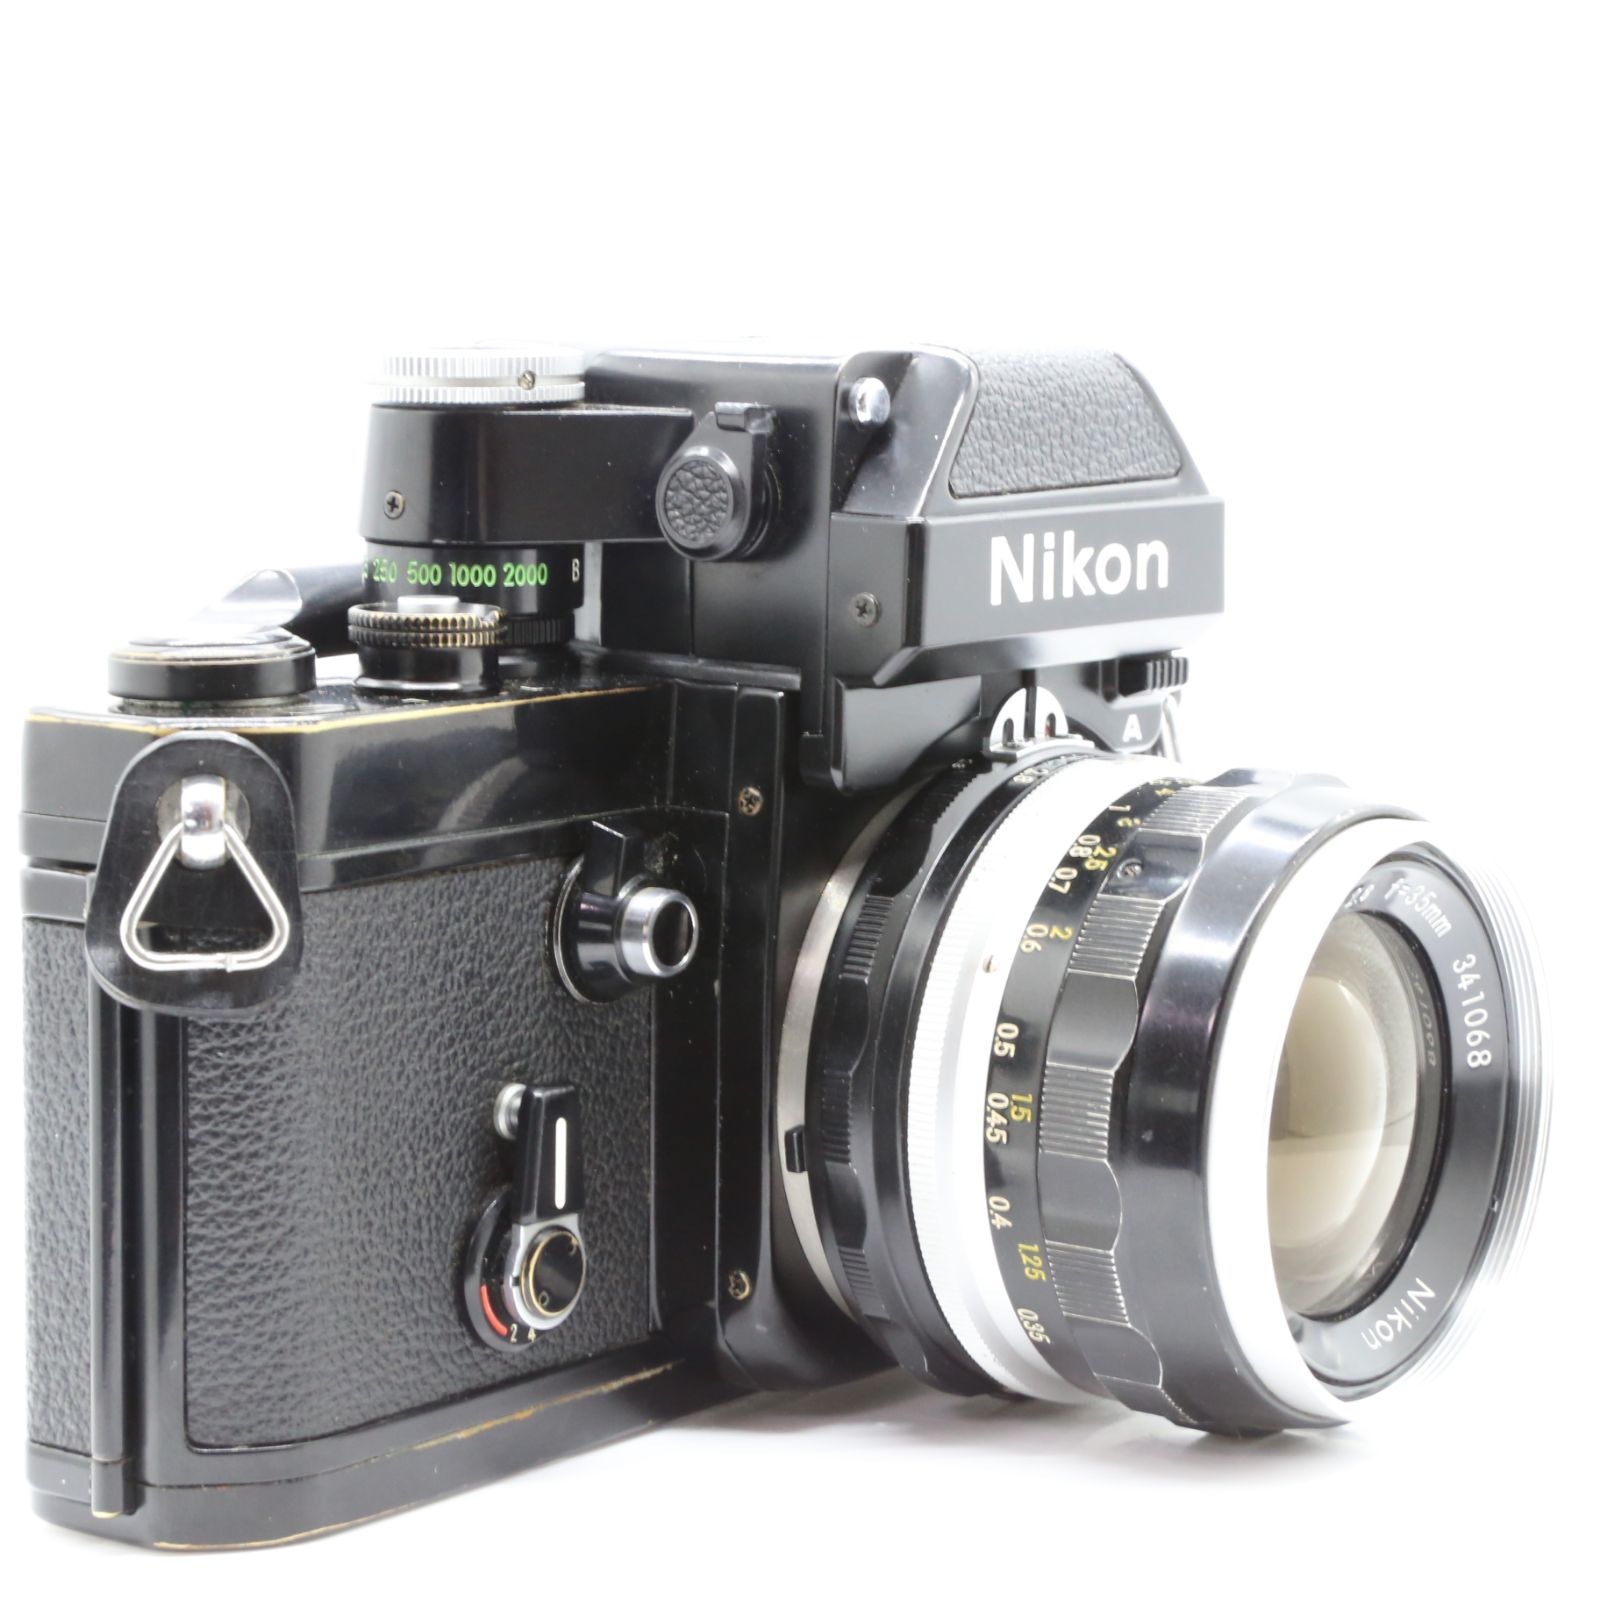 良品 Nikon F2 フォトミックA DP-11 ブラック 773万台 一眼レフ 